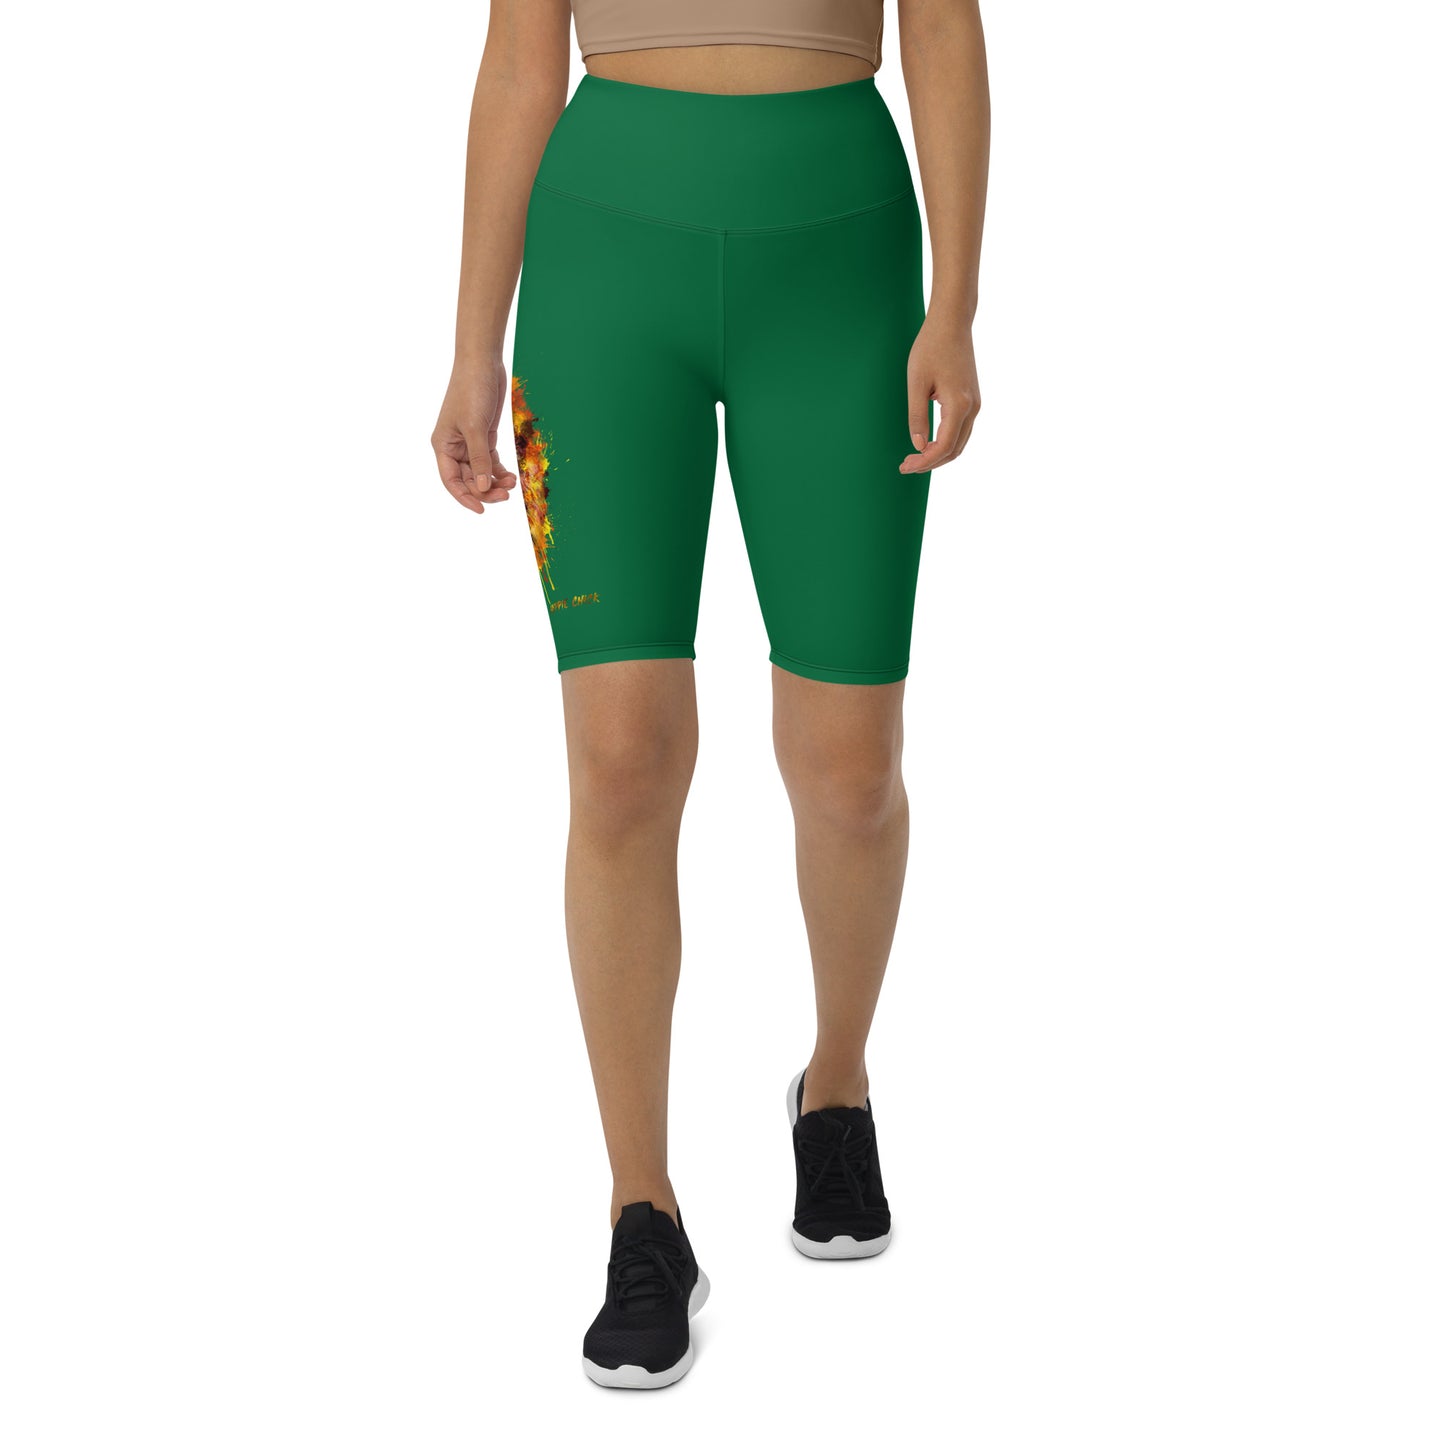 Jewel Biker Shorts